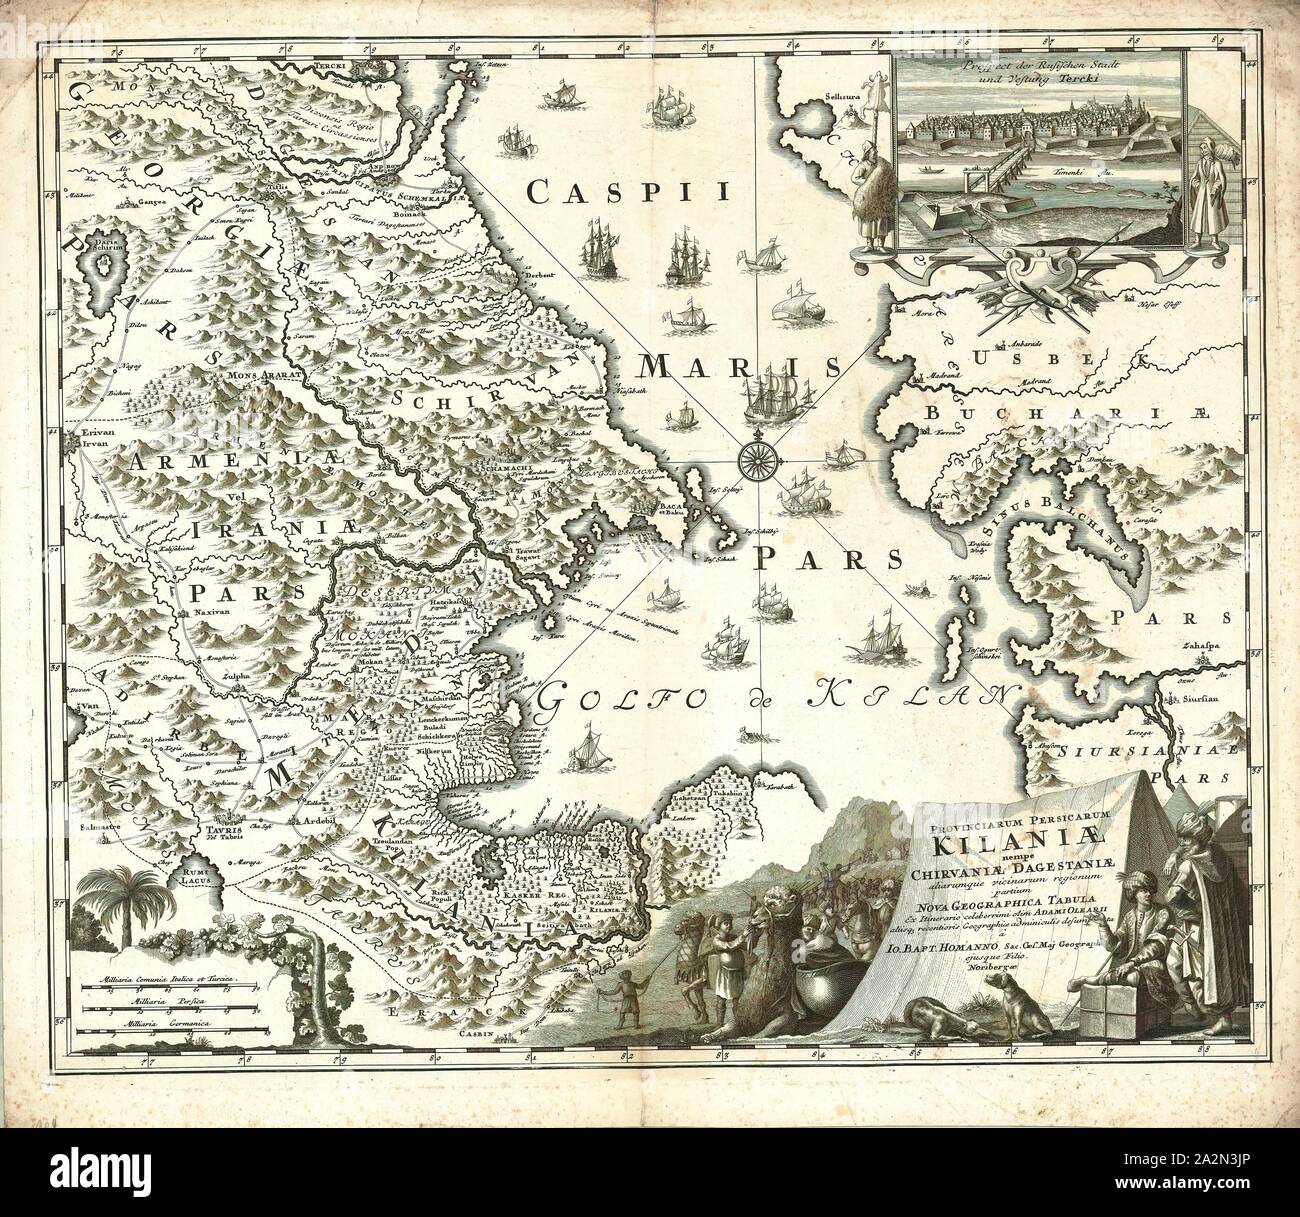 Mappa, Provinciarum Persicarum Kilaniae nempe Chirvaniae Dagestaniae aliarumque vicinarum regionum partium Nova tabula Geographica, Adam Olearius (1603-1671), stampa di calcografia Foto Stock